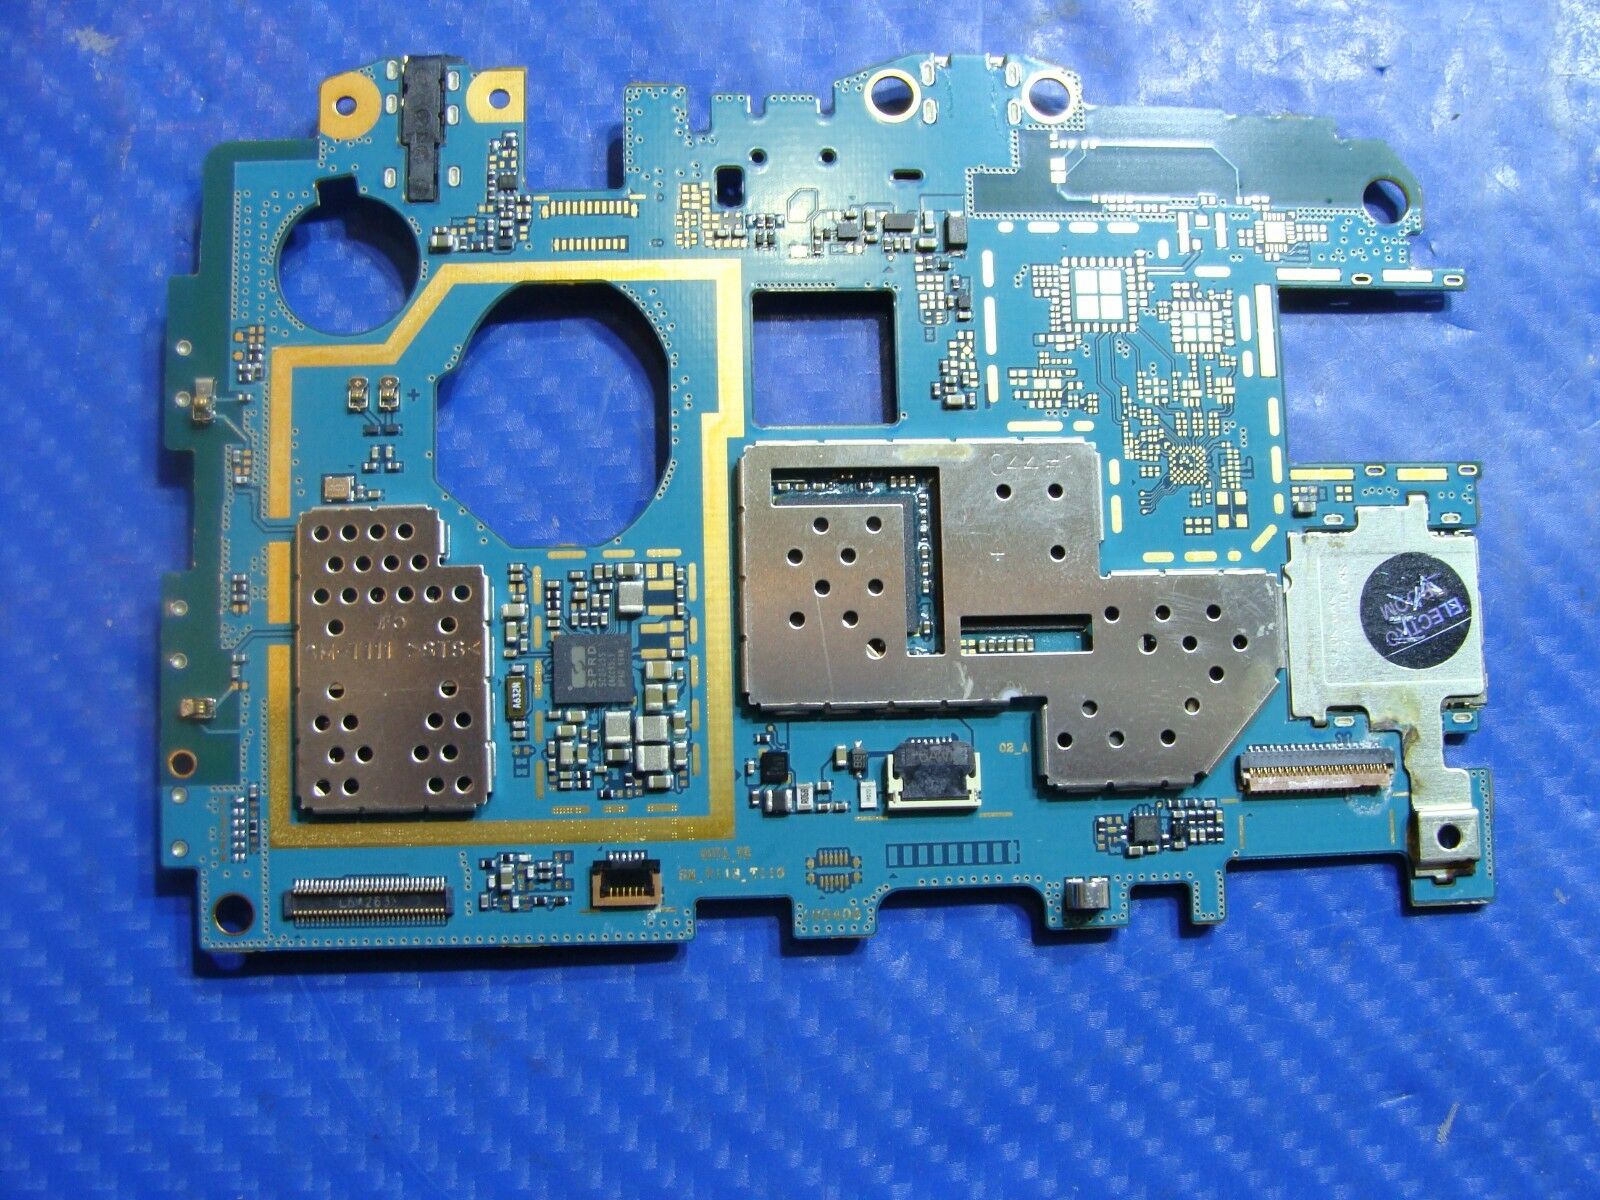 Samsung Galaxy Tab E Lite SM-T113 7